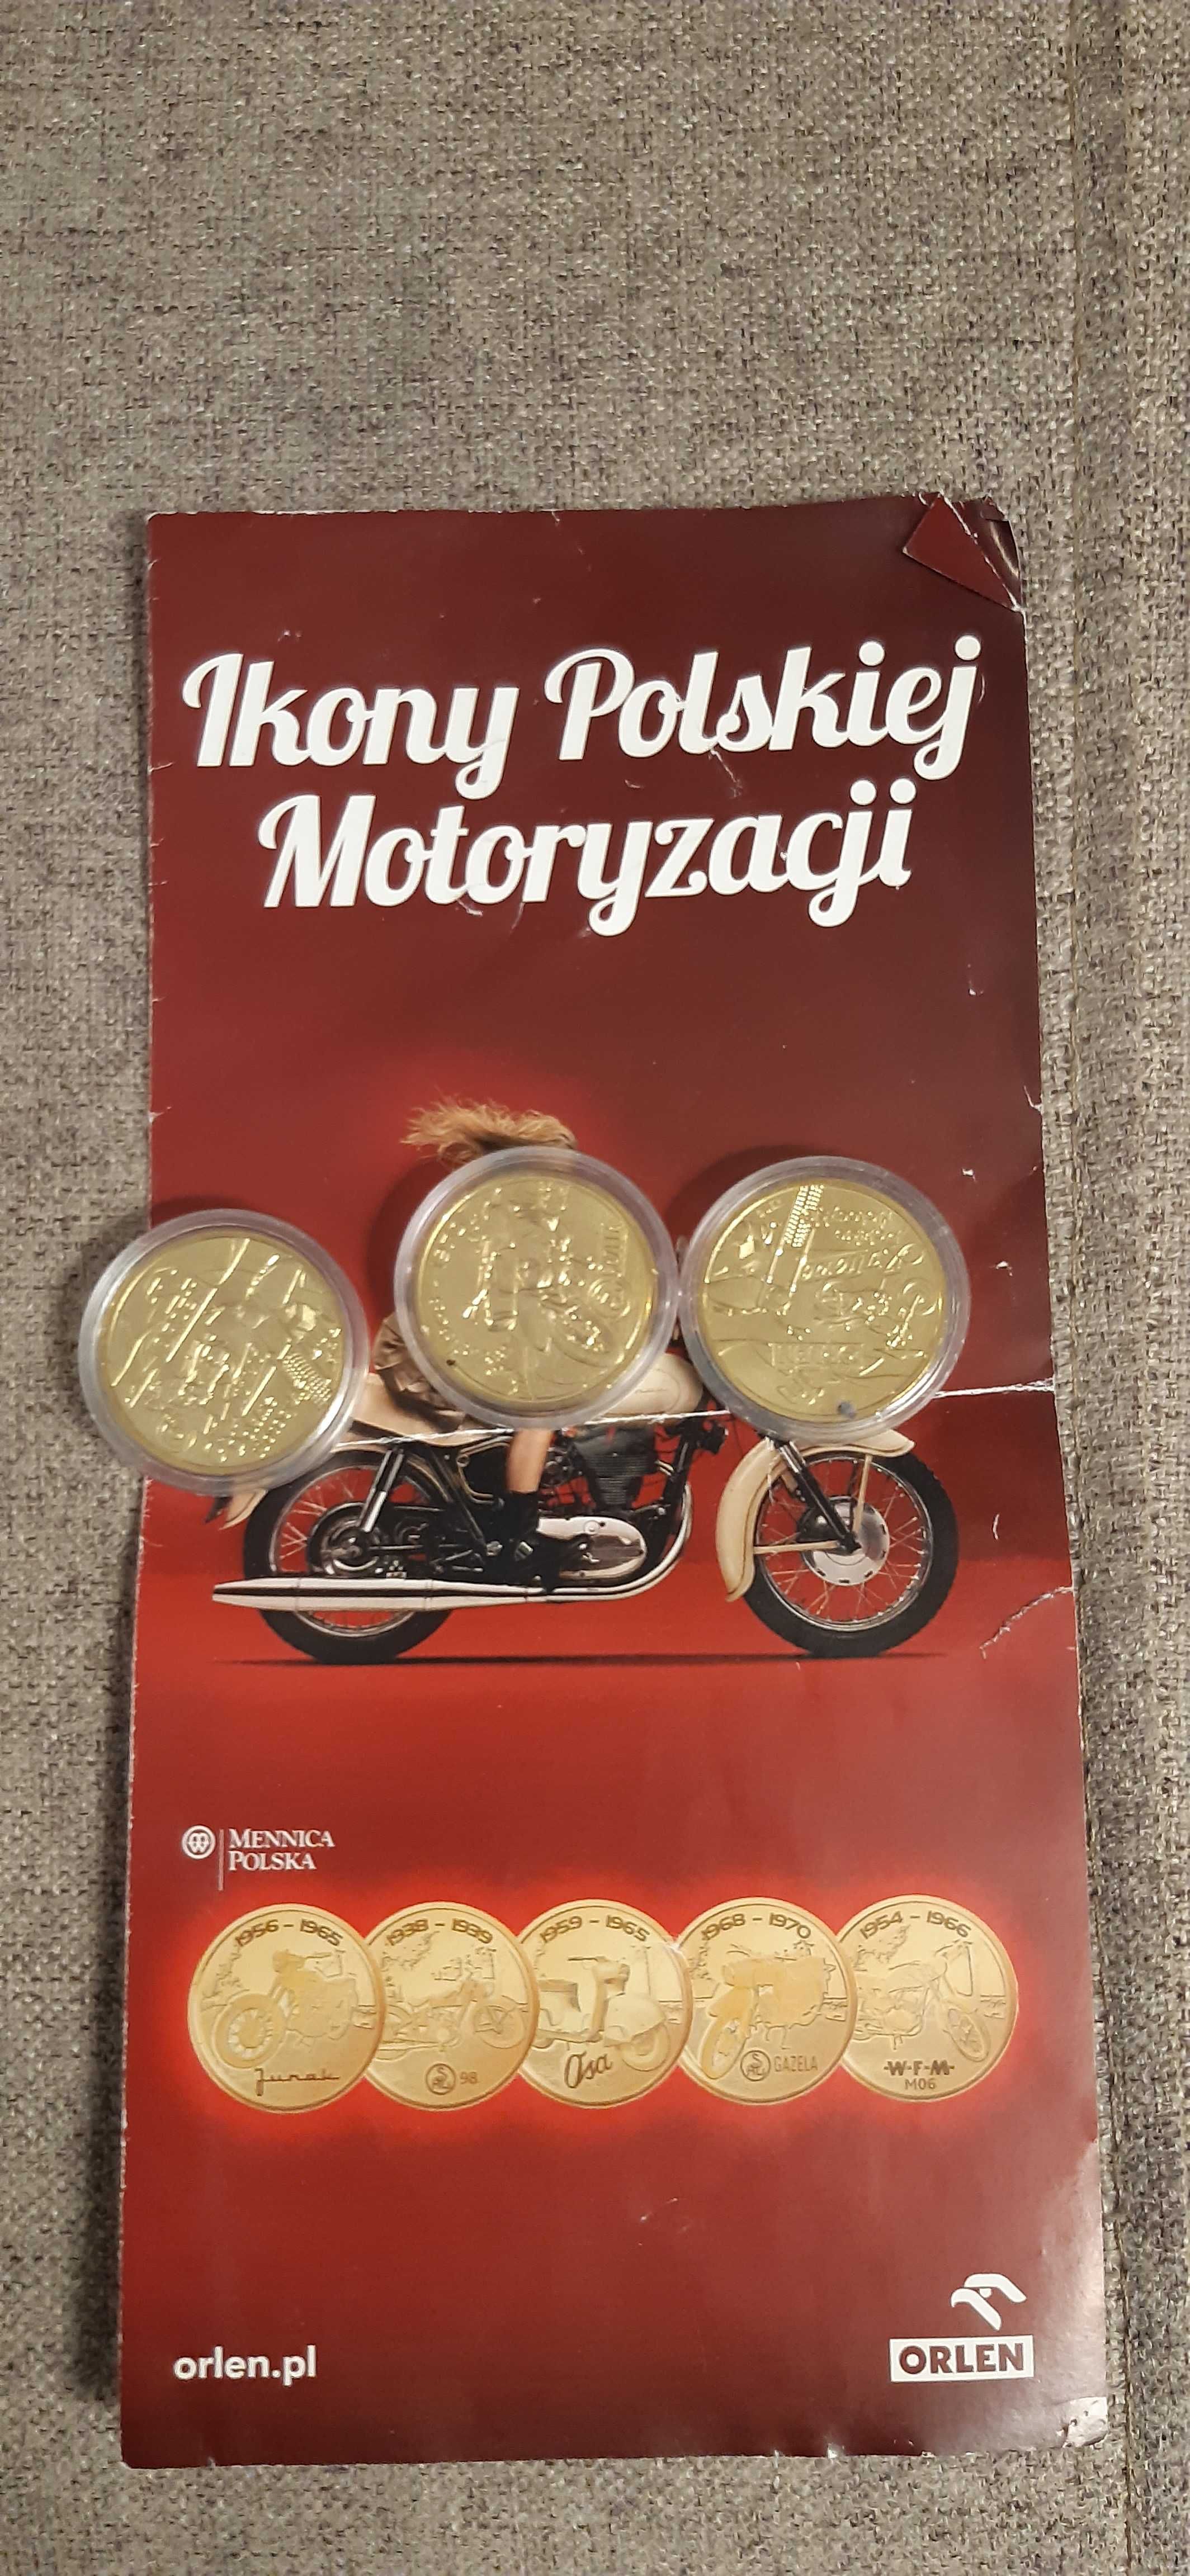 3 stare medale monety okolicznościowe ikony polskiej motoryzacji